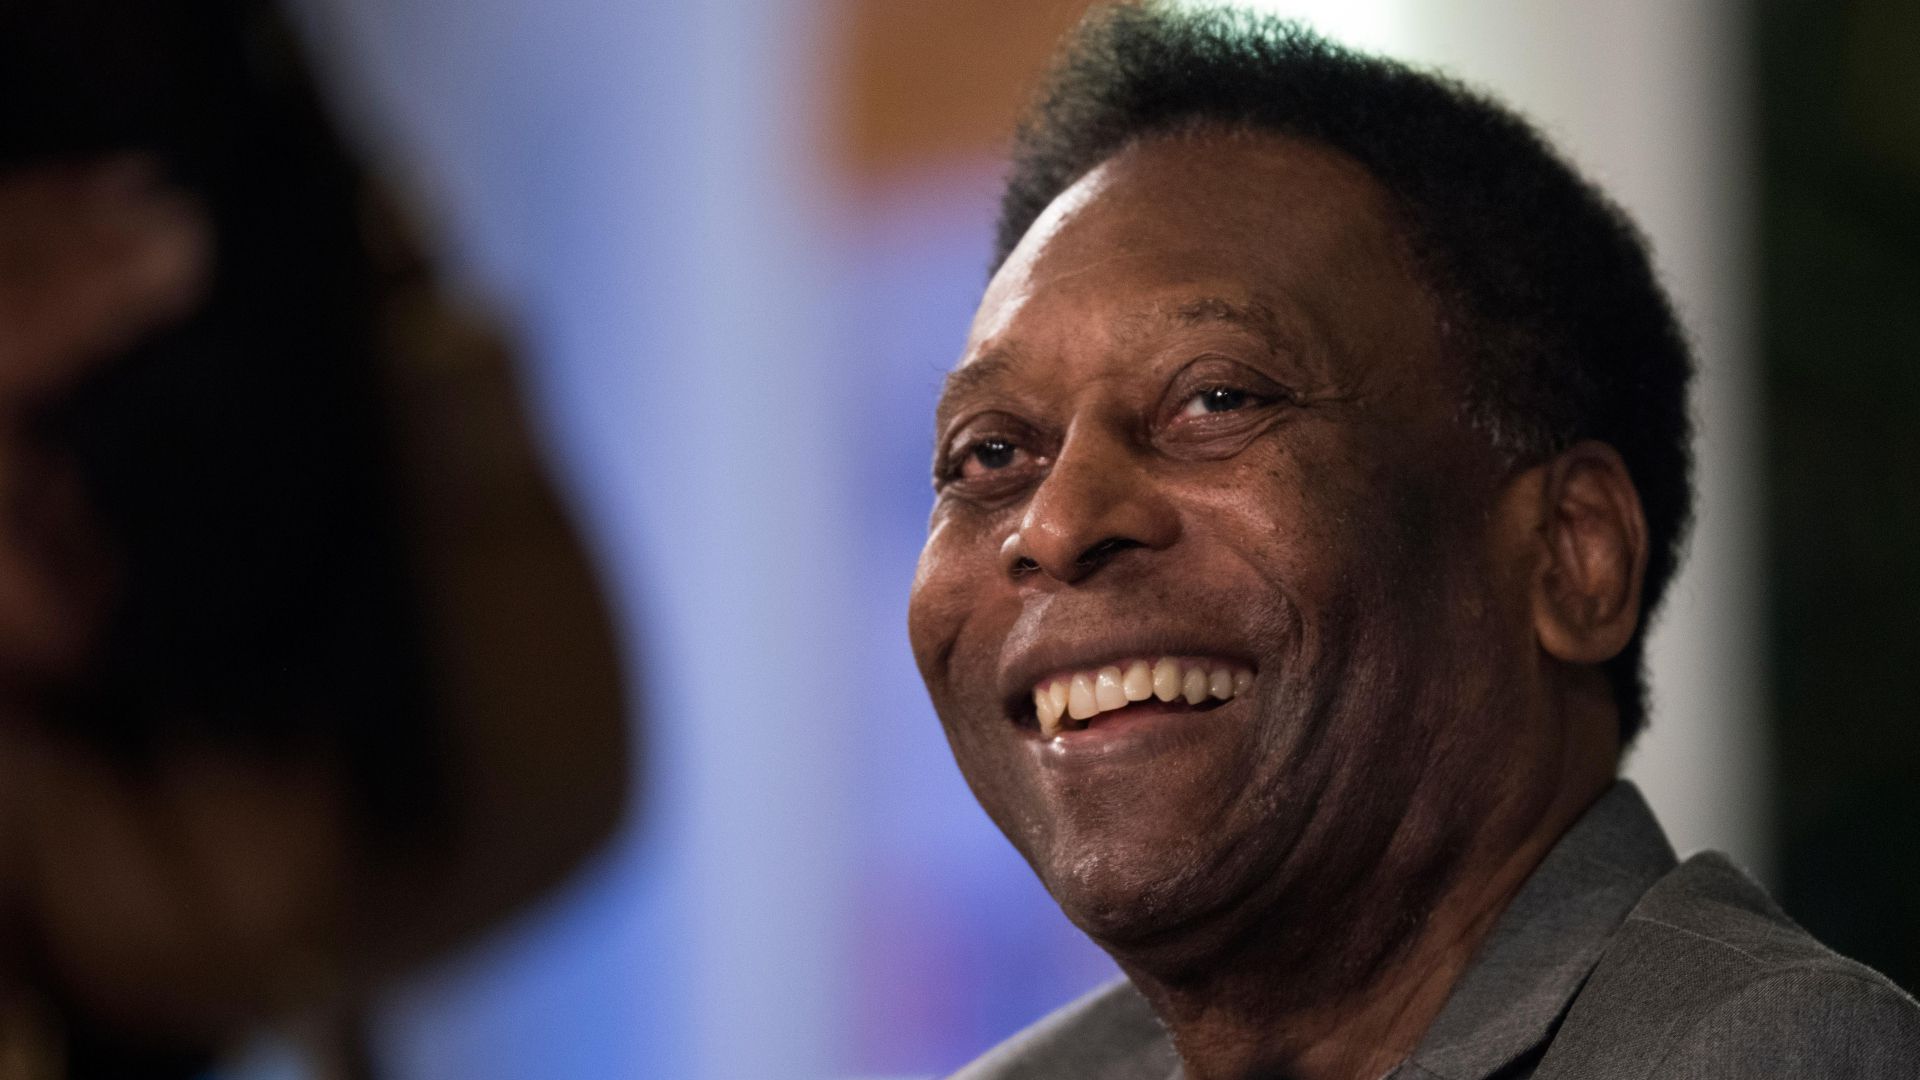 Stabilak az életjelek, javul Pelé állapota